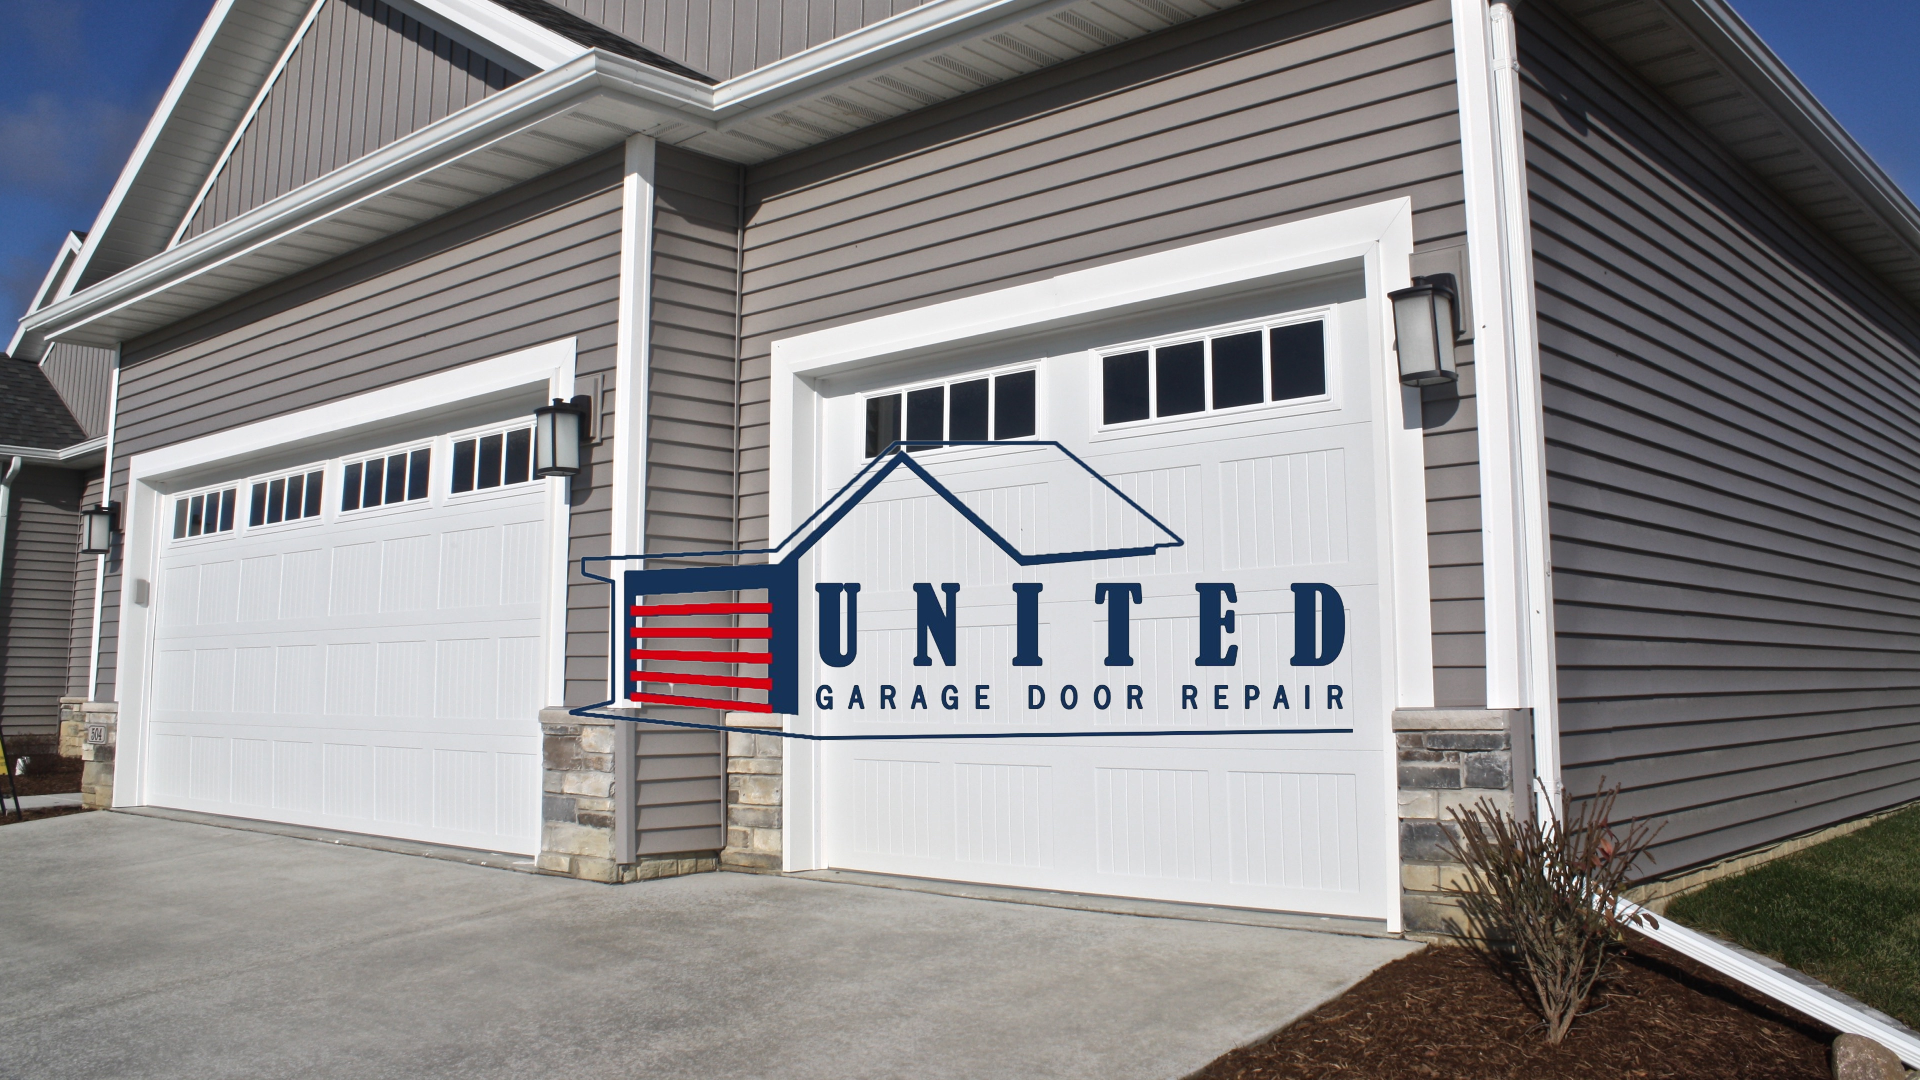 United Garage Door Repair Elevates Standard of Excellence in Phoenix with Comprehensive Garage Door Repair Services